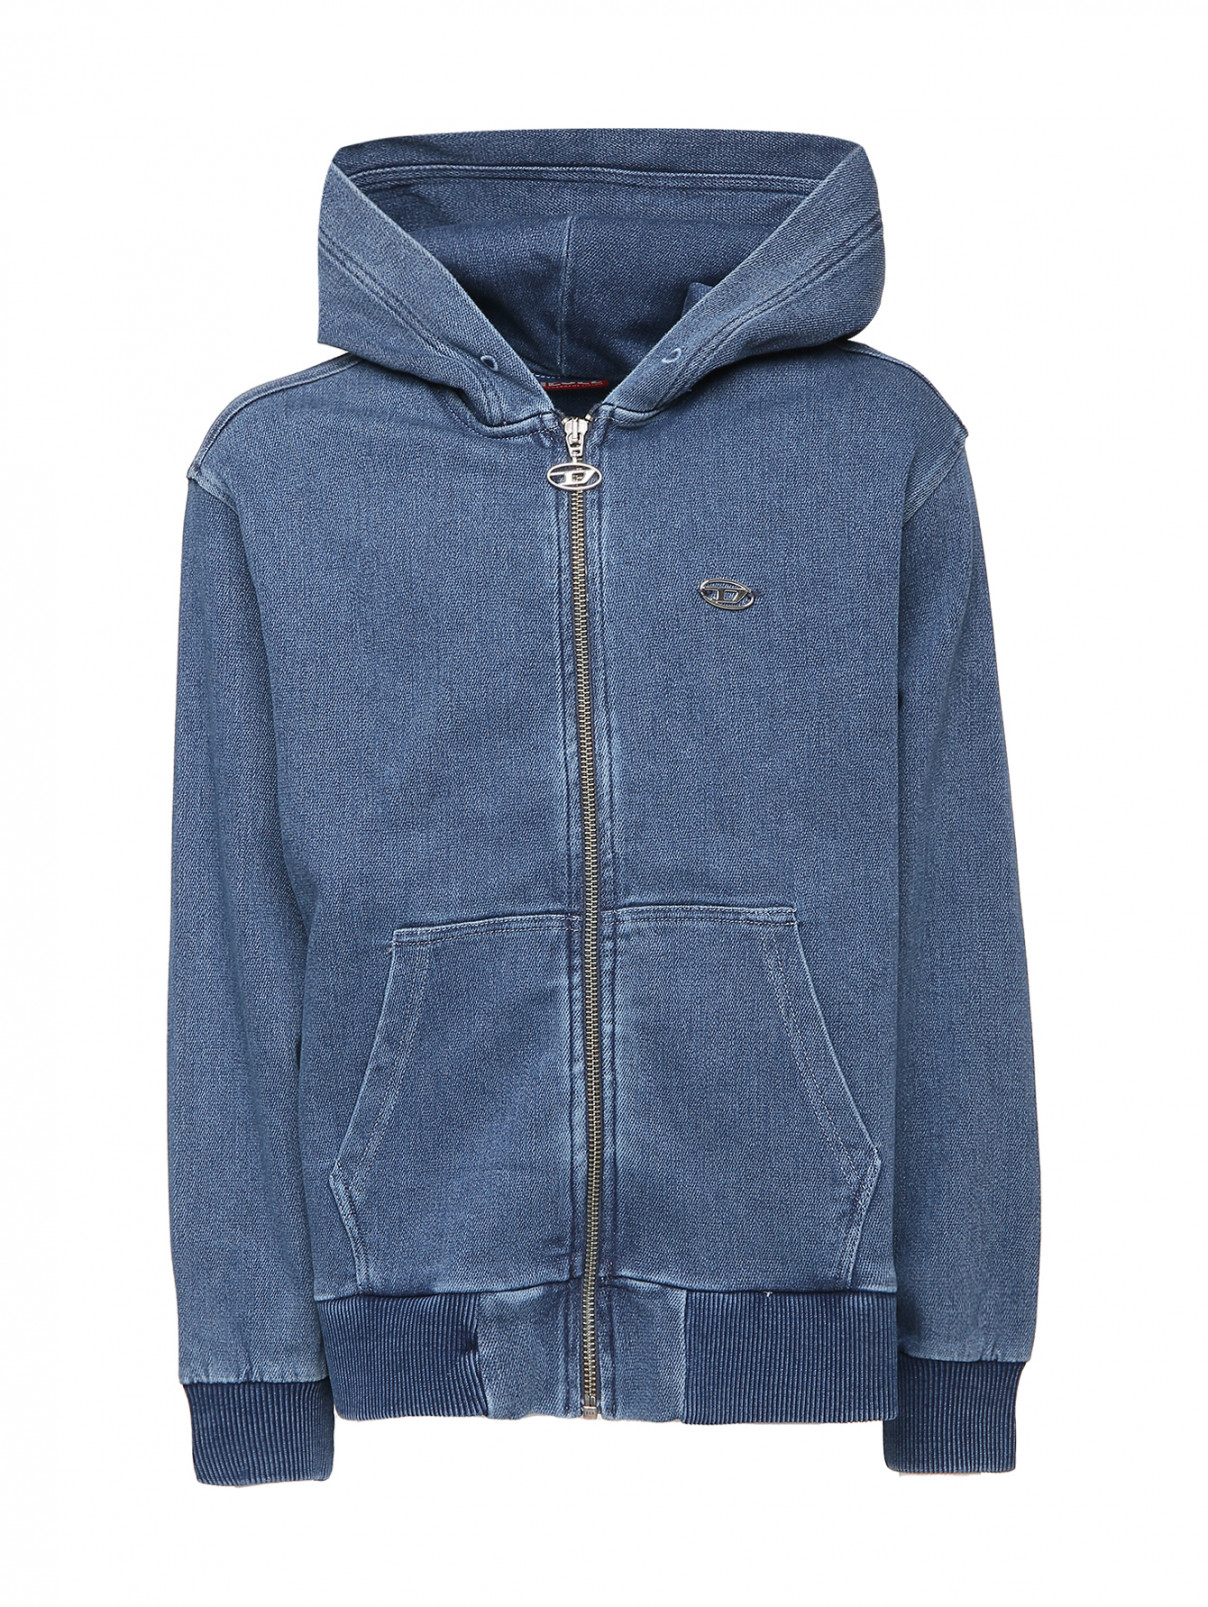 Джинсовая куртка с карманами Diesel  –  Общий вид  – Цвет:  Синий